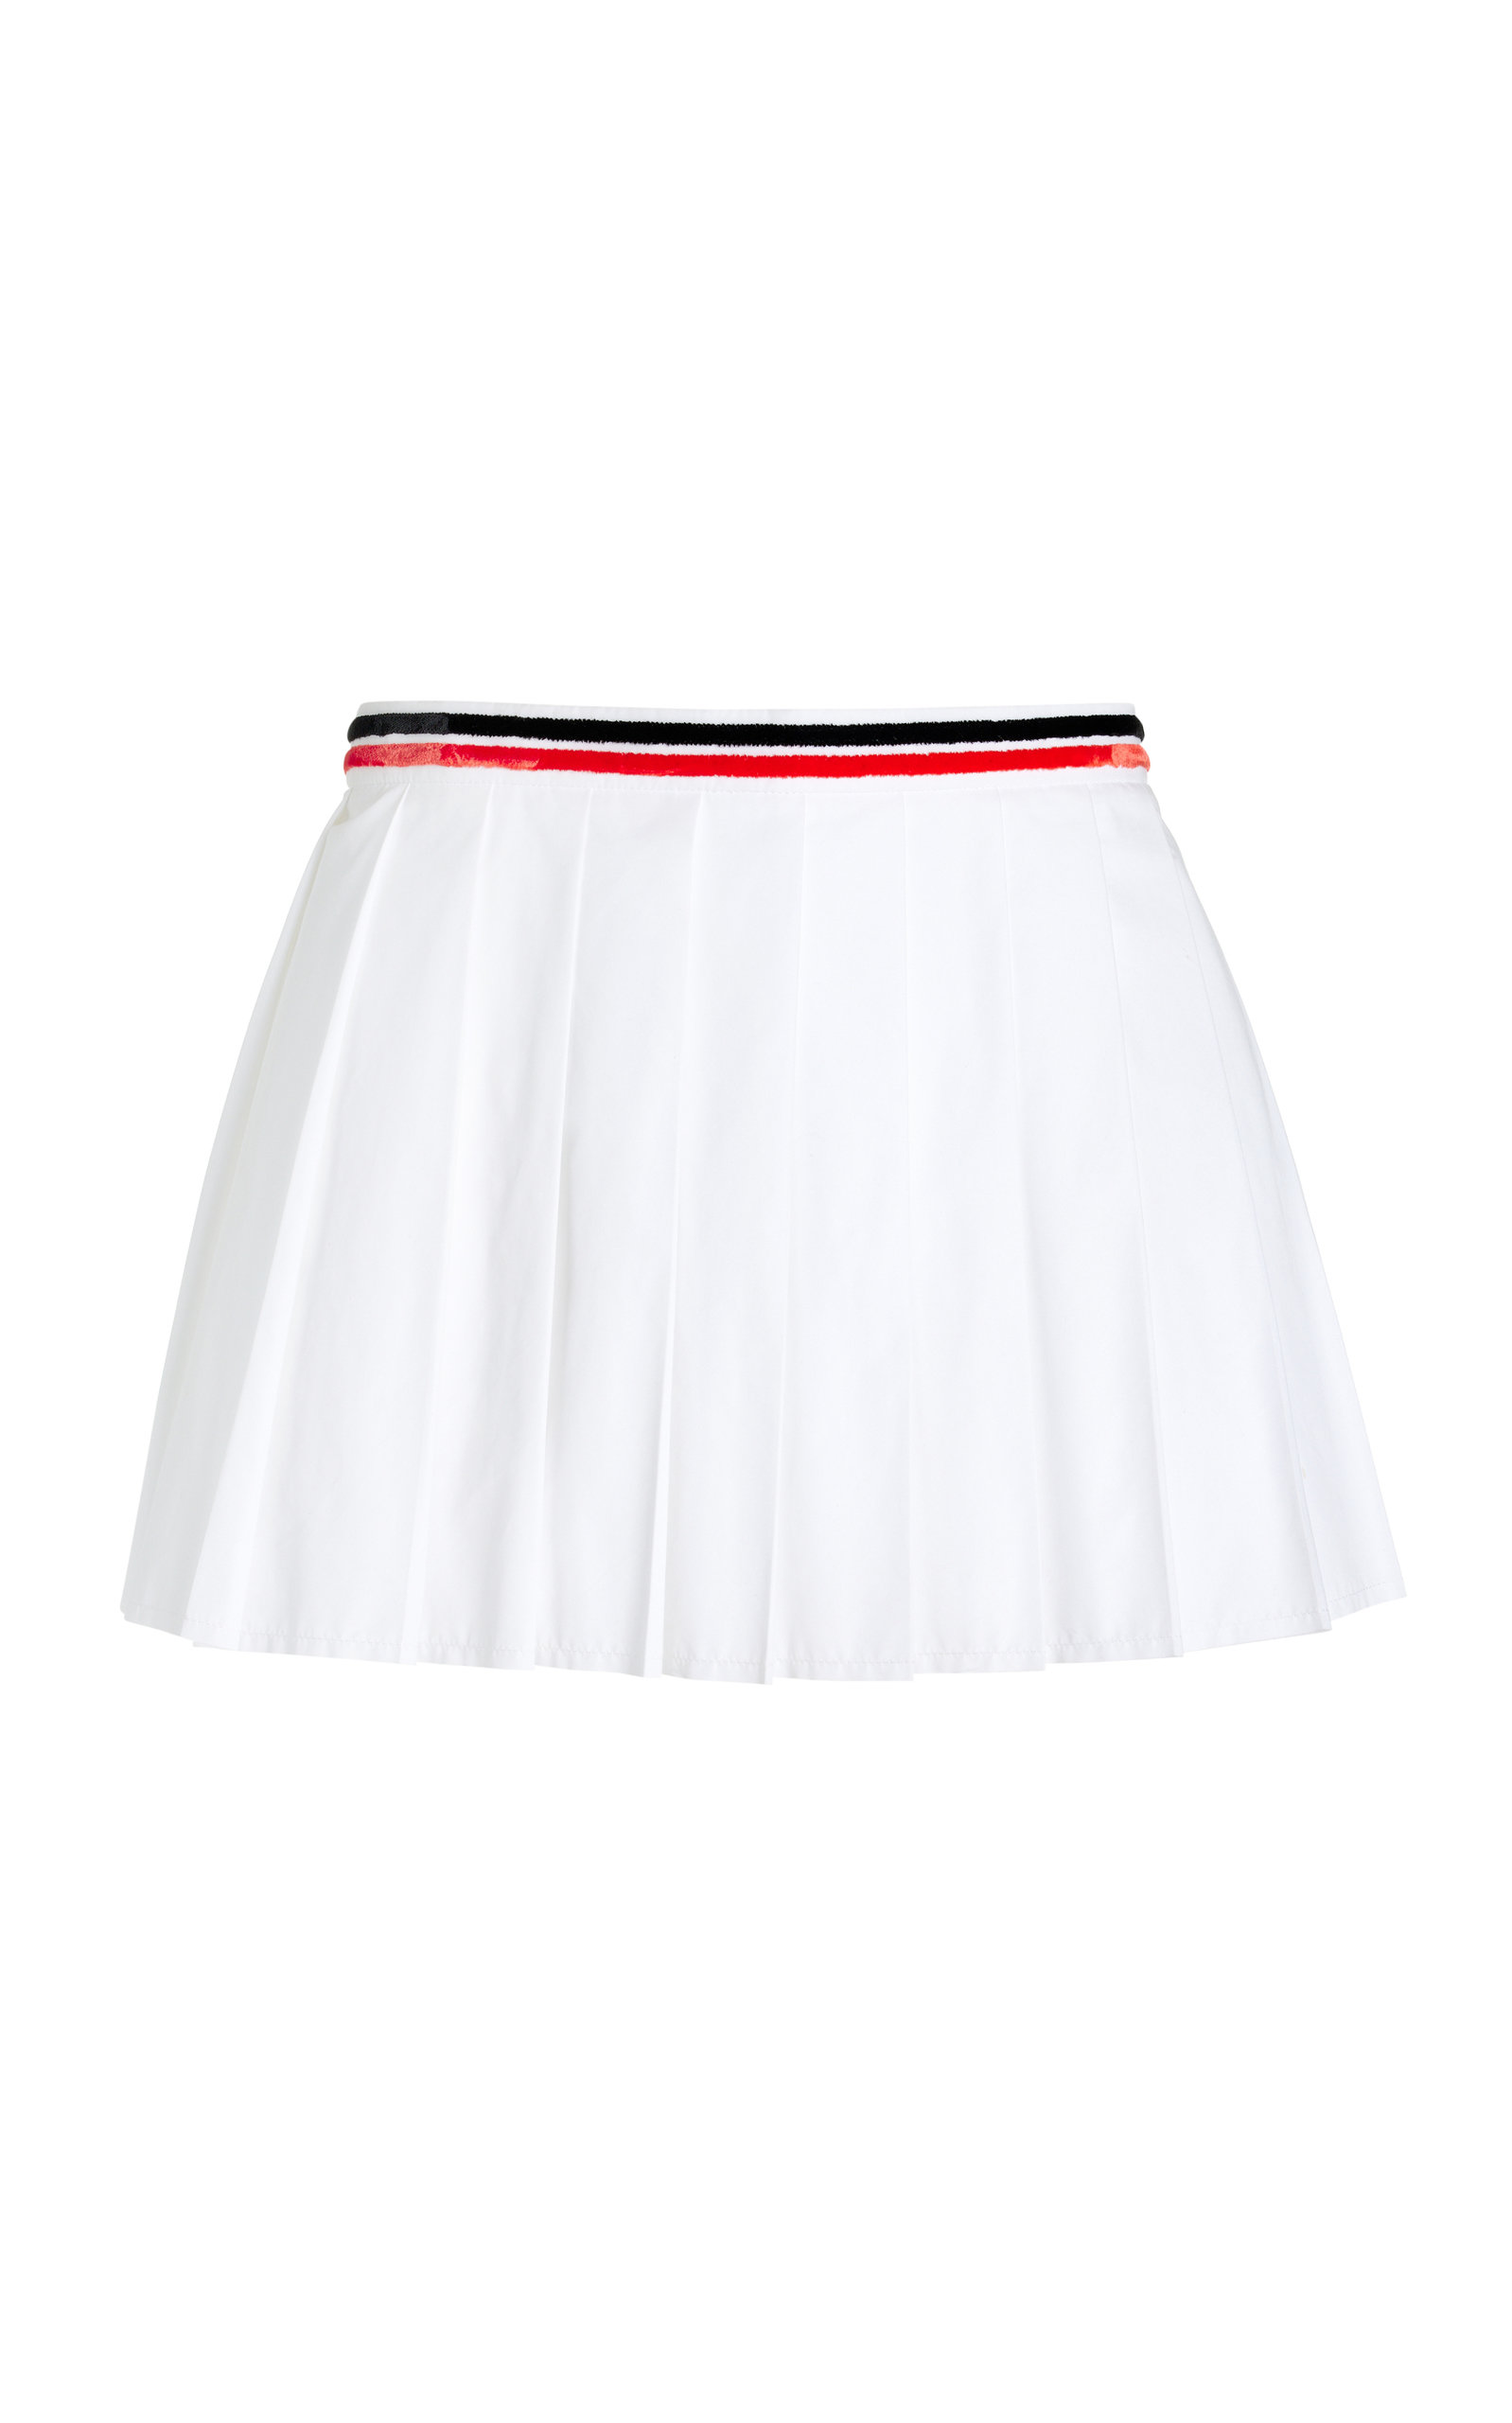 Miu Miu - Women's Pleated Poplin Mini Skirt - White - IT 36 - Moda Operandi